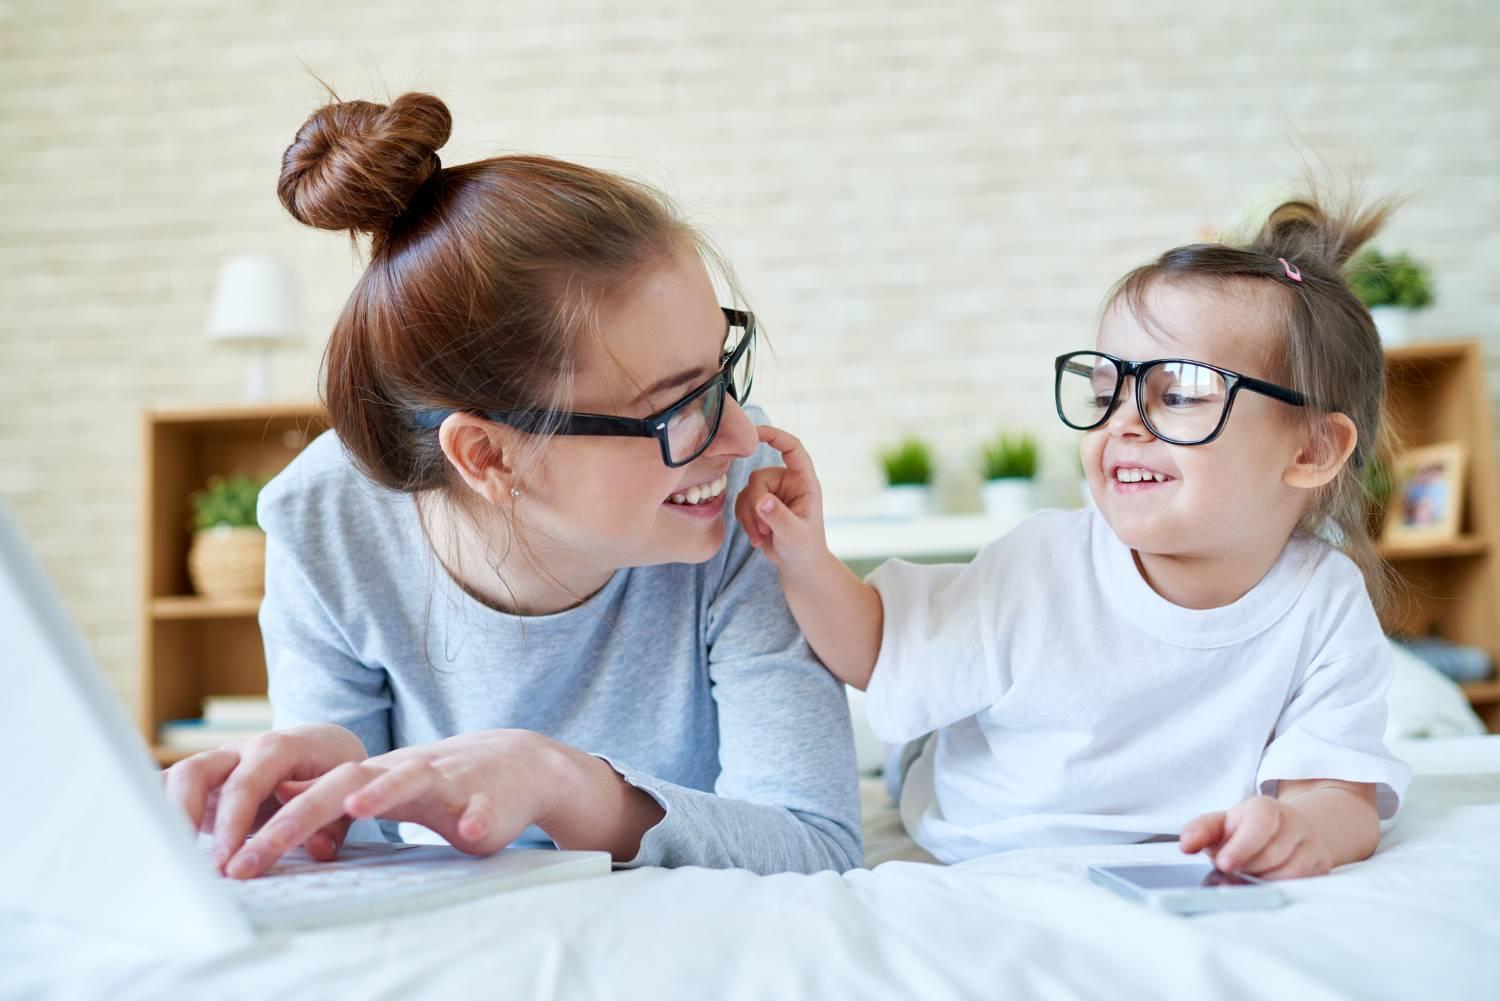 Brillen und Kontaktlinsen: Mutter und Kind albern miteinander herum. Beide tragen eine Brille.